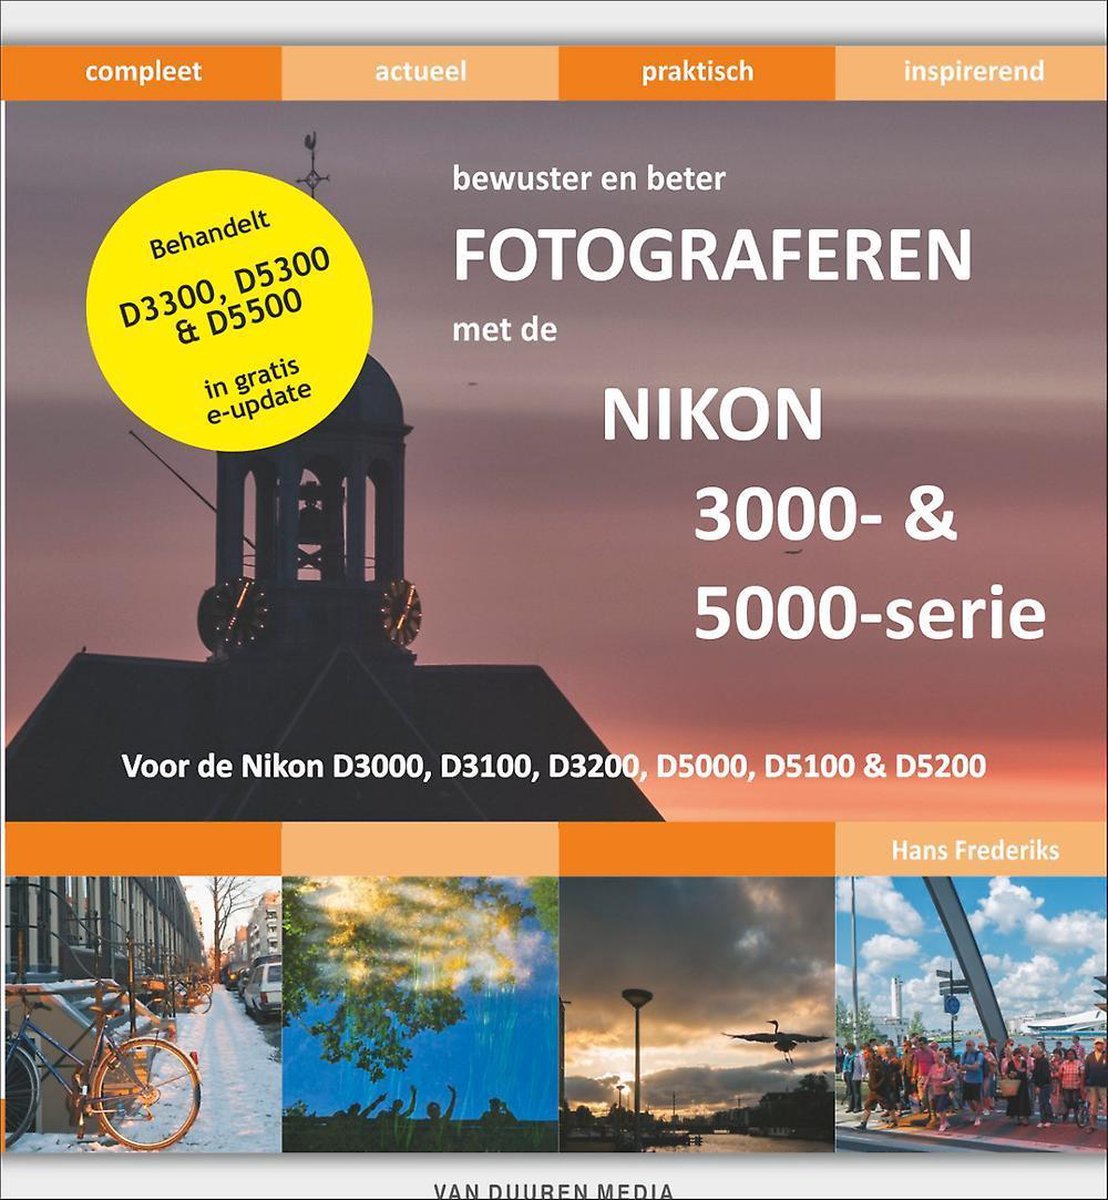 Bewuster en beter - Bewuster en beter fotograferen met de Nikon D3000 en D5000